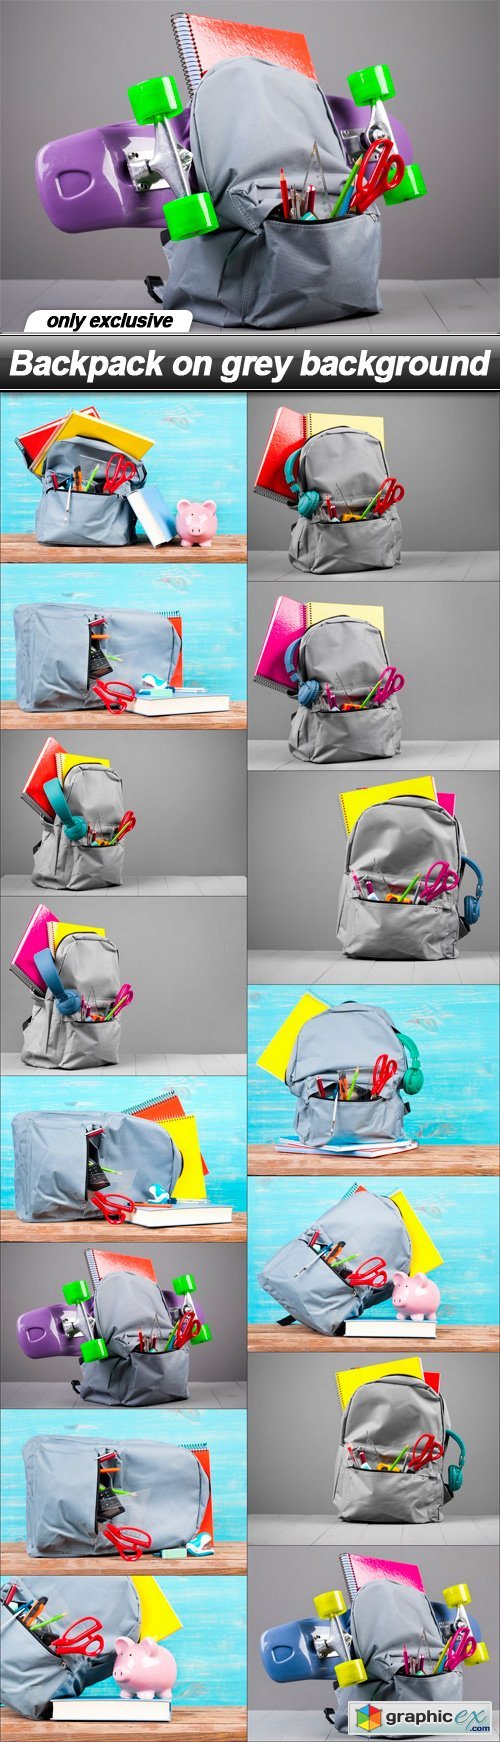 Backpack on grey background - 15 UHQ JPEG